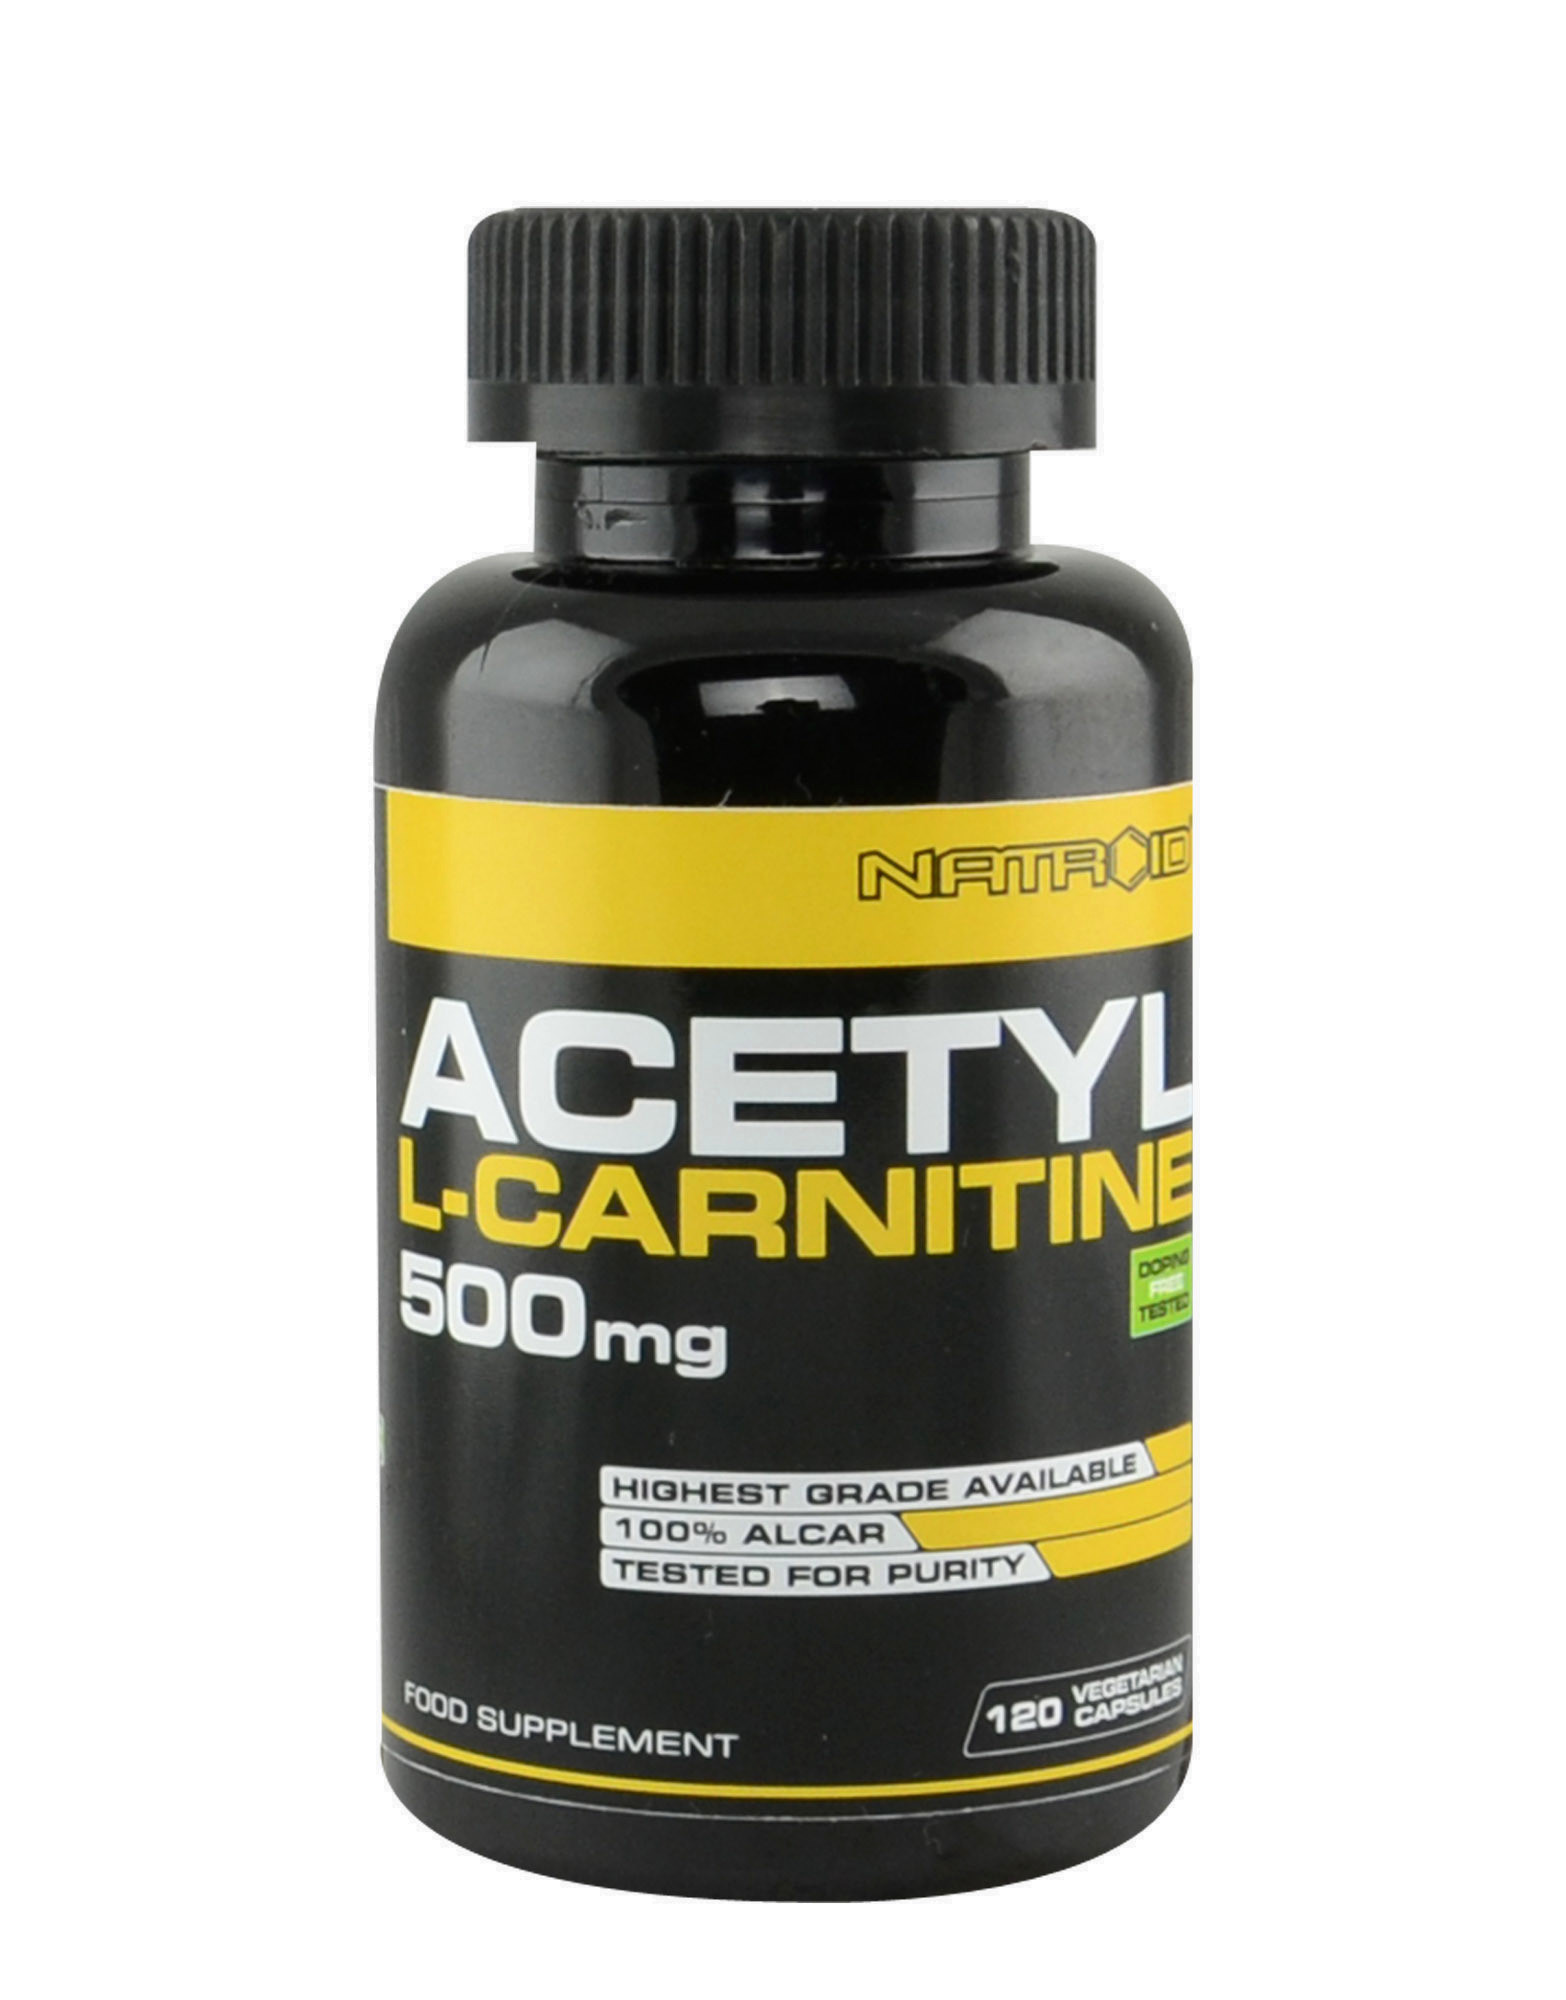 Л карнитин. Ацетил карнитин. L-Carnitine 500mg. Ацетил л карнитин. Карнитин селен